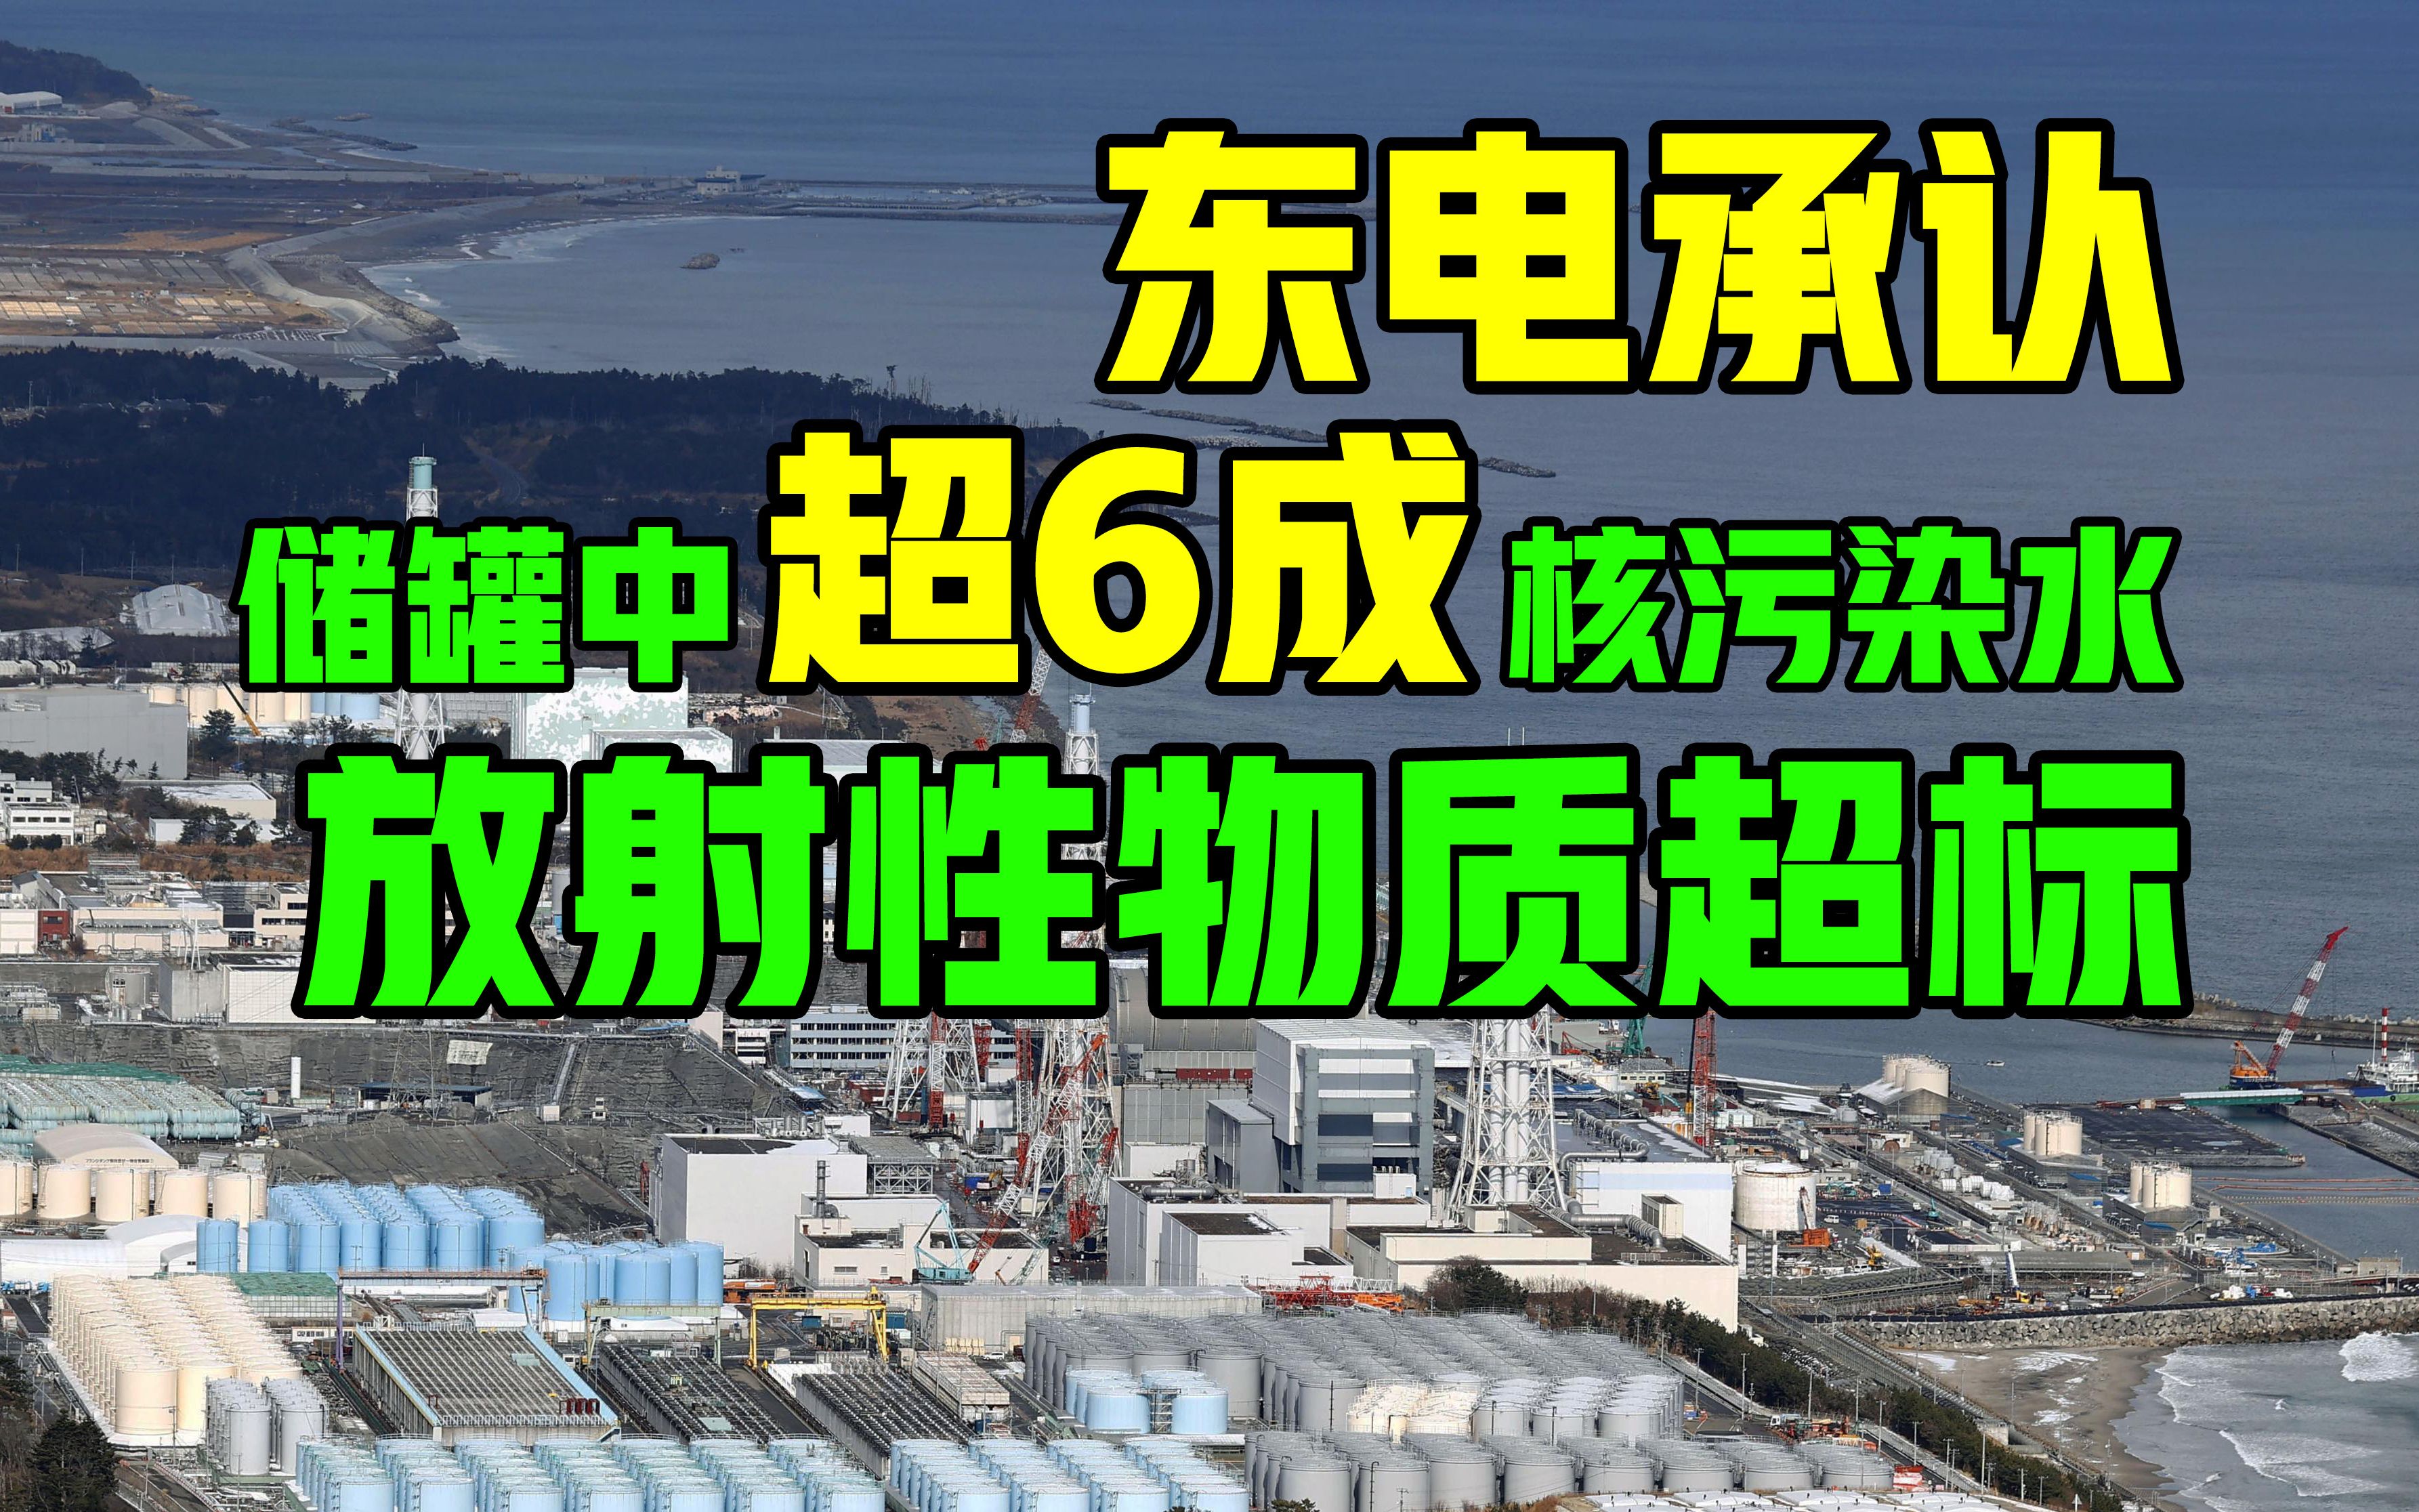 日本东电承认储罐中超6成核污染水放射性物质超标